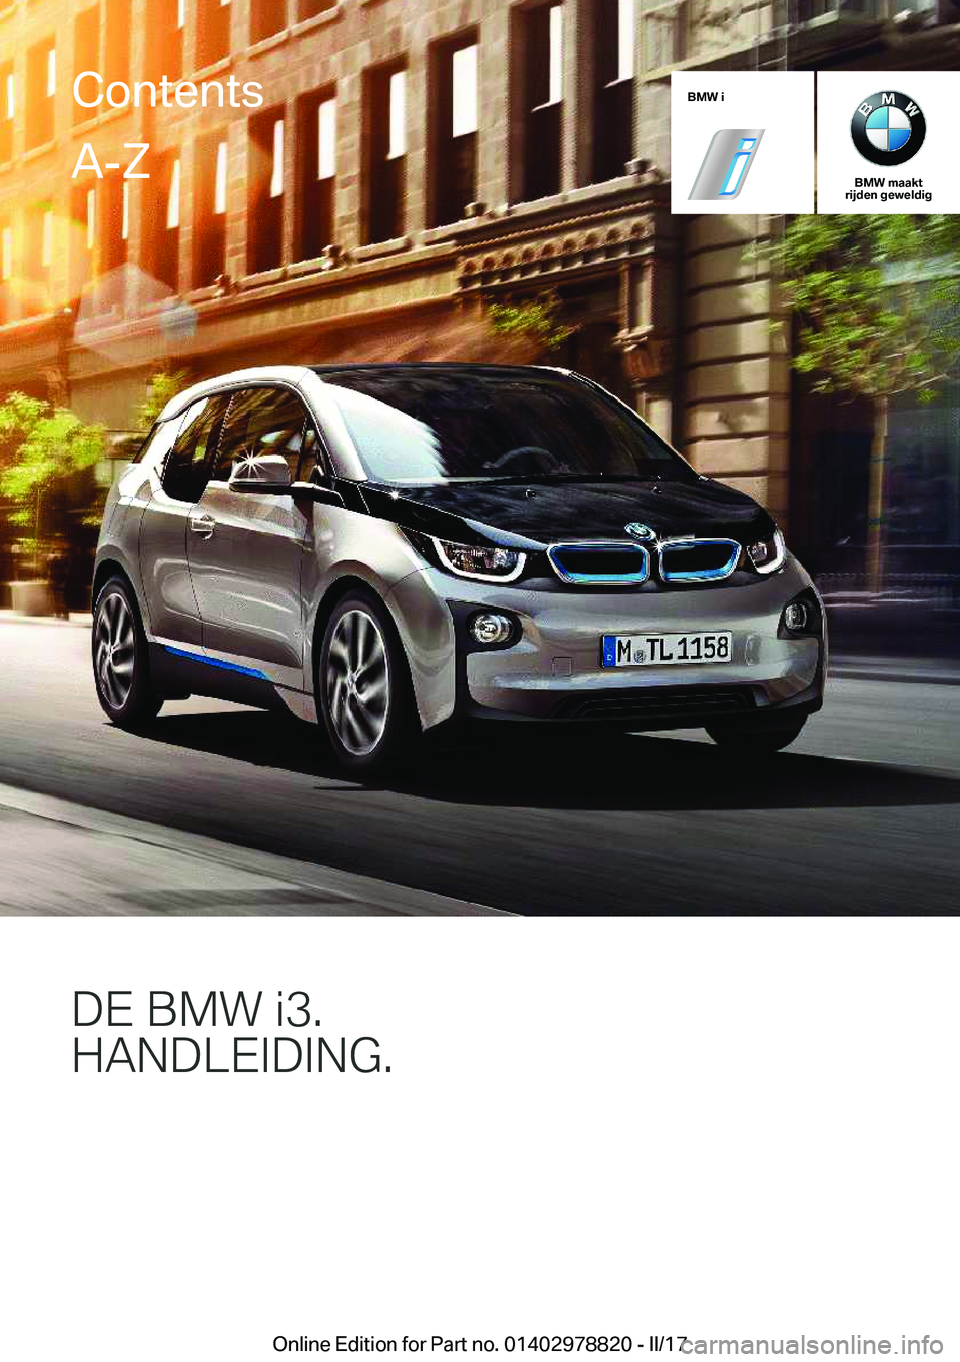 BMW I3 2017  Instructieboekjes (in Dutch) �B�M�W��i
�B�M�W��m�a�a�k�t
�r�i�j�d�e�n��g�e�w�e�l�d�i�g
�D�E��B�M�8��J��
�H�A�N�D�L�E�I�D�I�N�G�
�C�o�n�t�e�n�t�s�A�-�Z
�O�n�l�i�n�e� �E�d�i�t�i�o�n� �f�o�r� �P�a�r�t� �n�o�.� �0�1�4�0�2�9�7